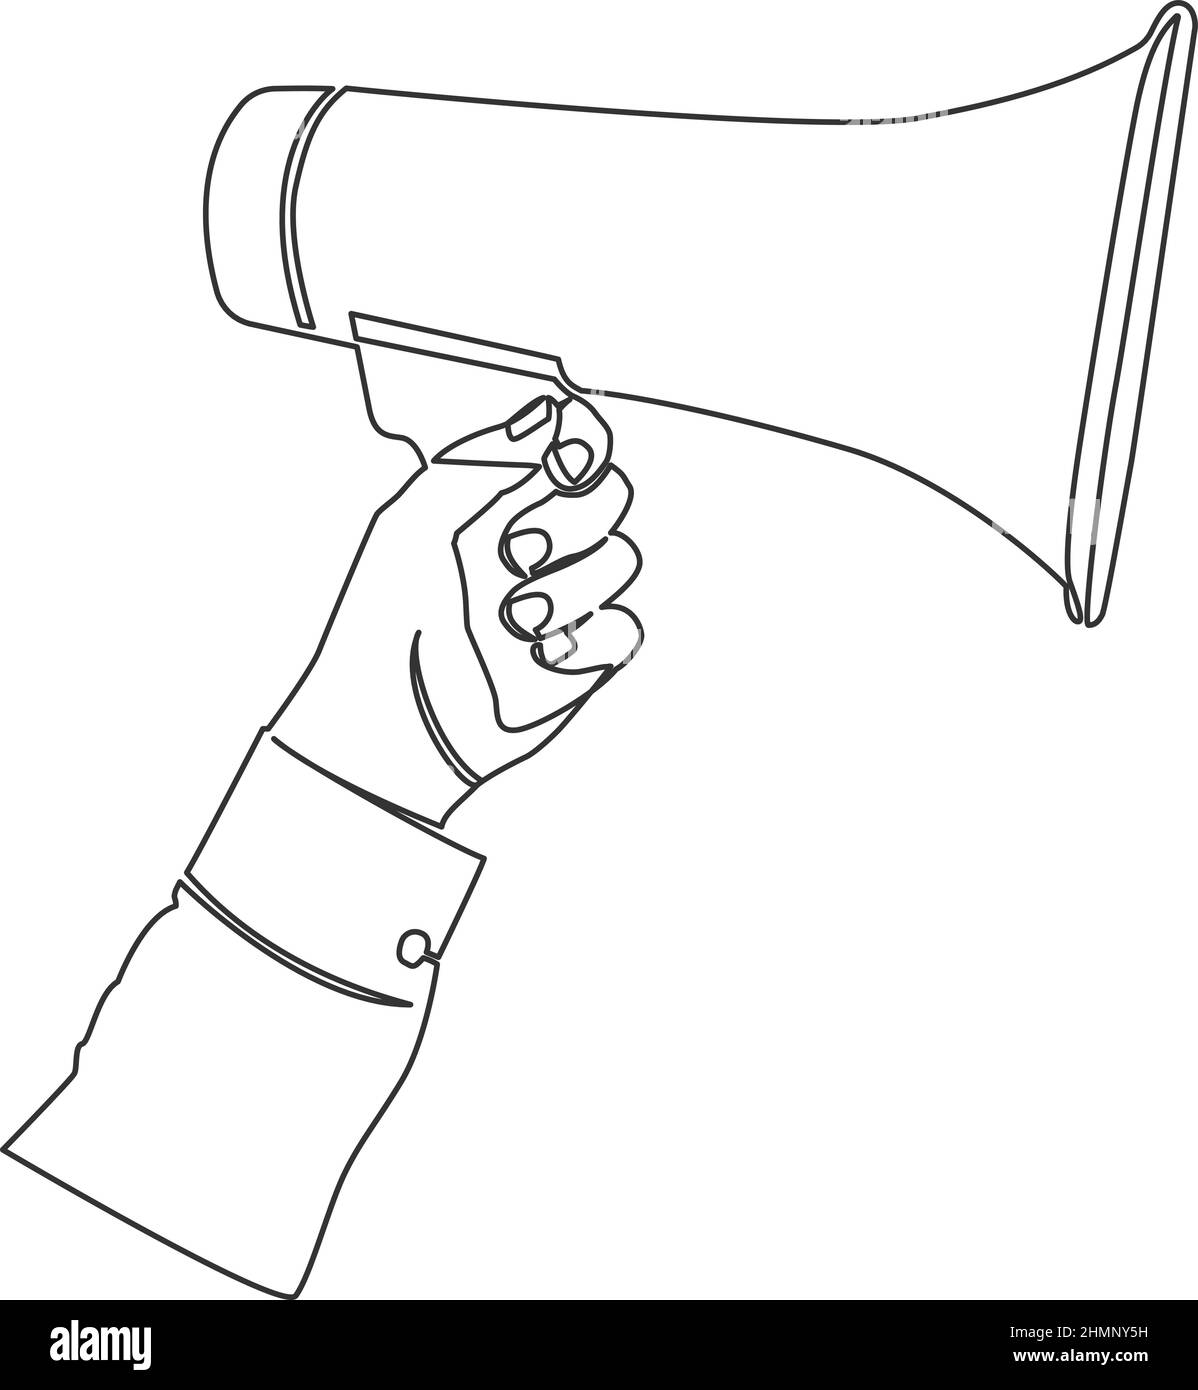 Einzeilige Zeichnung des Hand haltenden Megaphons, fortlaufende Linienvektordarstellung Stock Vektor